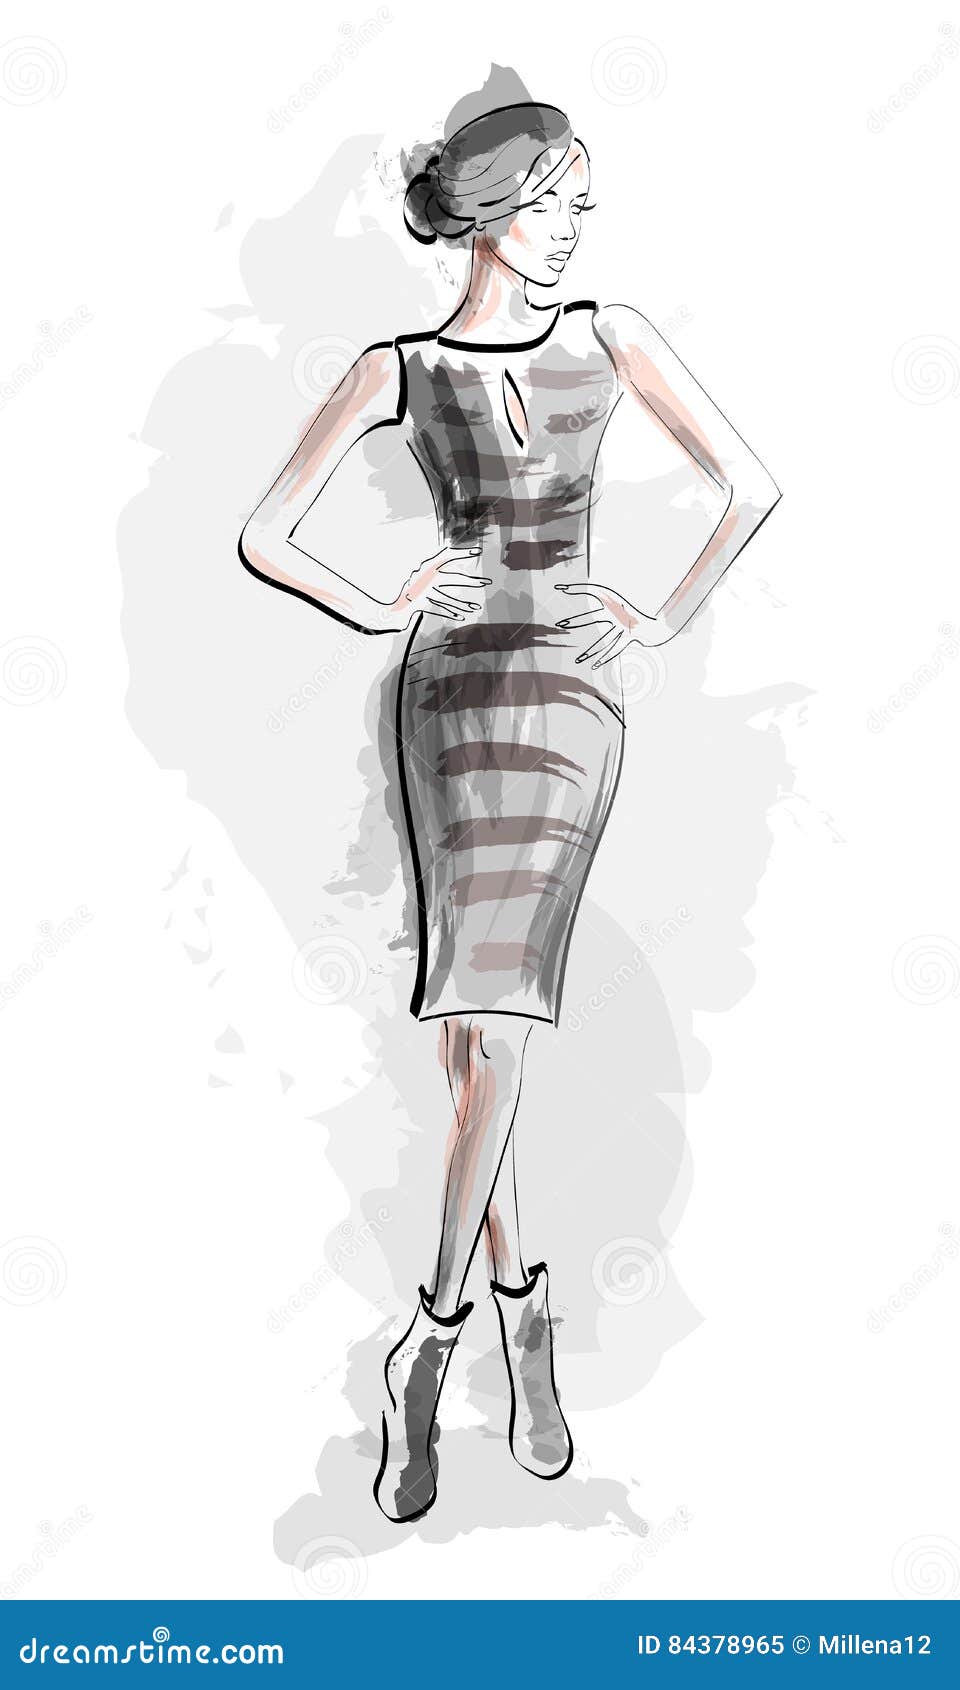 Megara  Modern Fashion Sketch Gown by CheshireScalliArt on DeviantArt